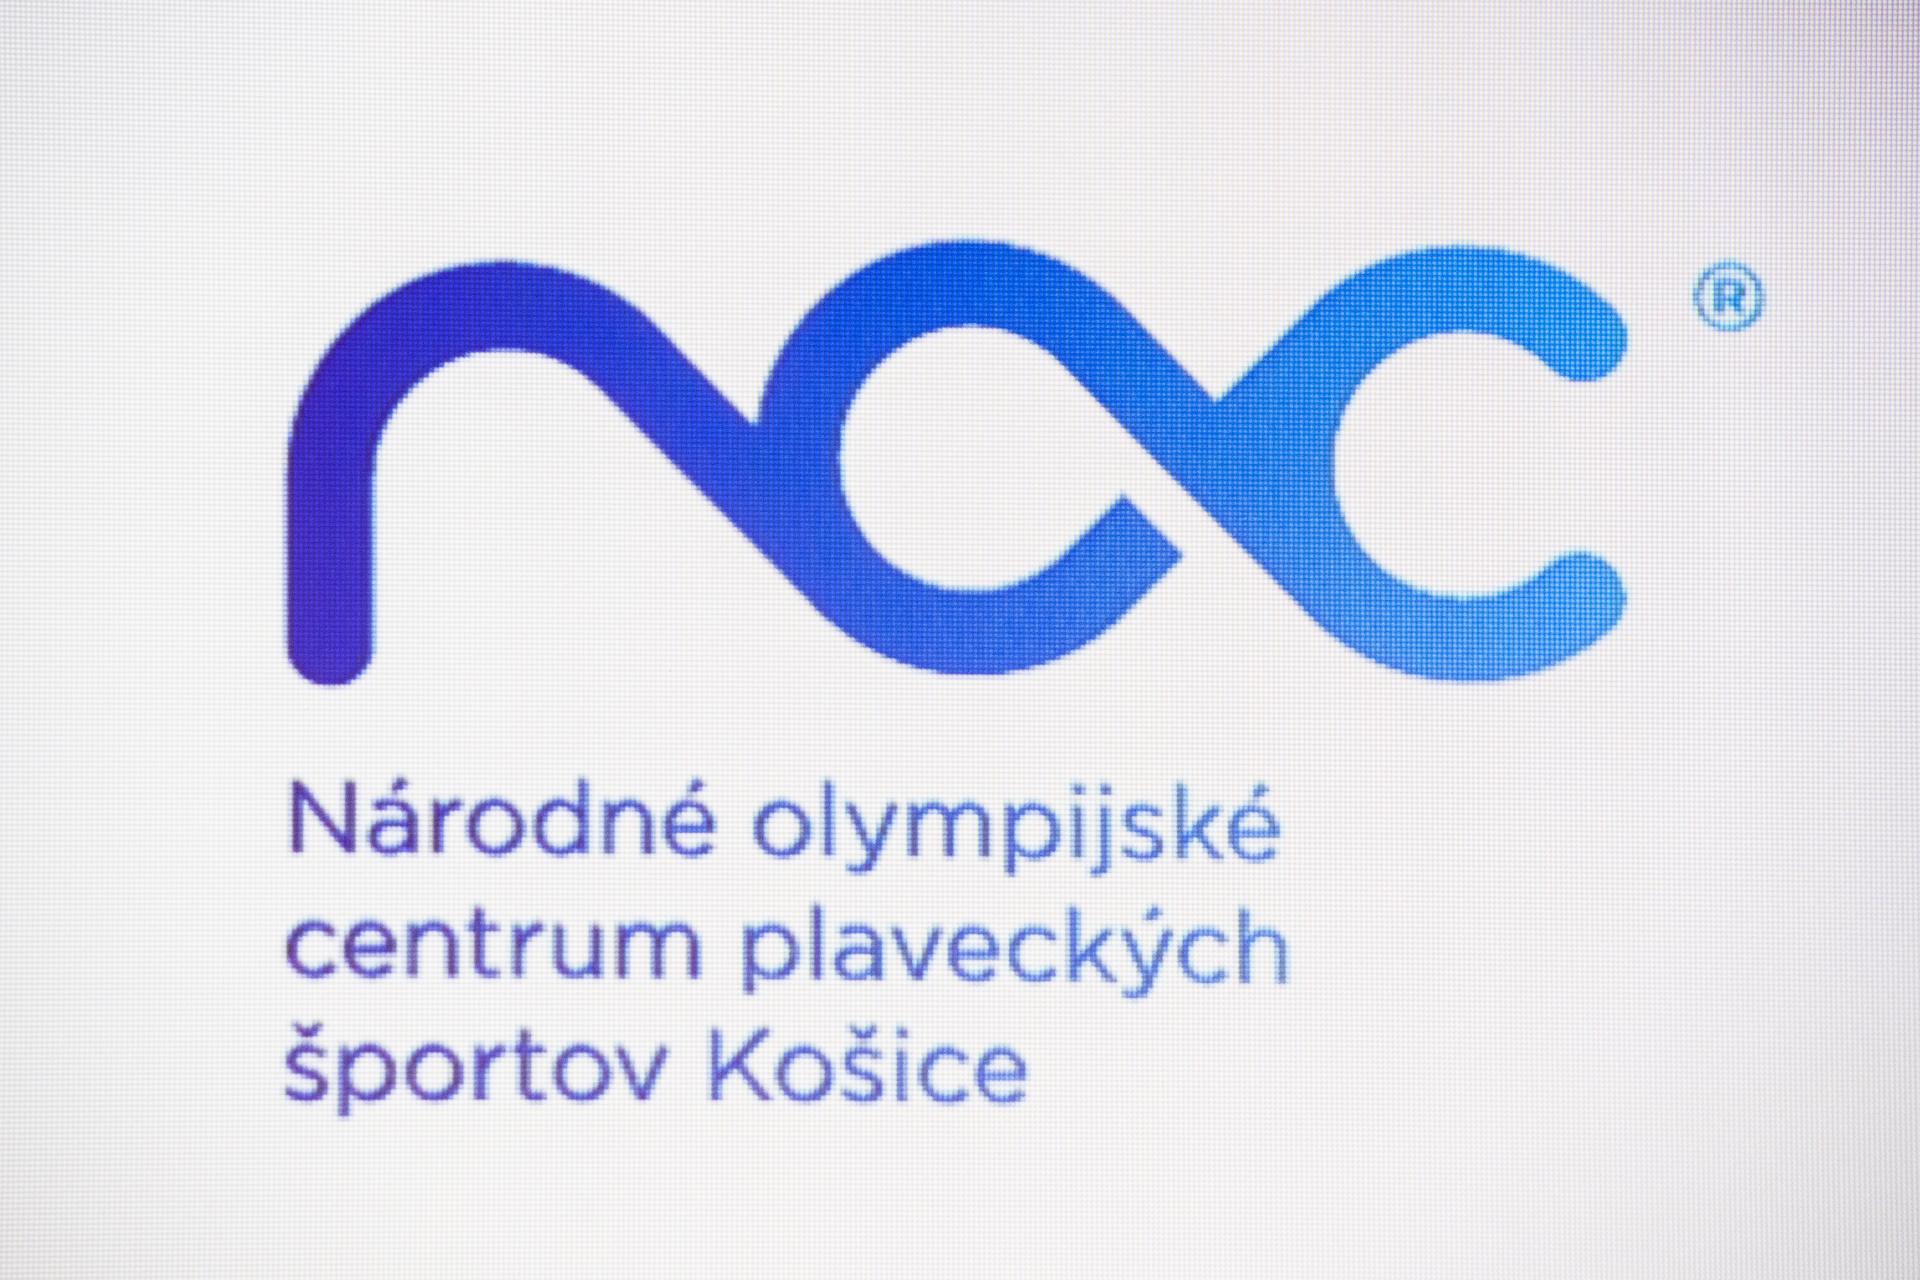 V Košiciach by malo do roku 2025 vyrásť Národné olympijské centrum. Má byť dejiskom plaveckých súťaží